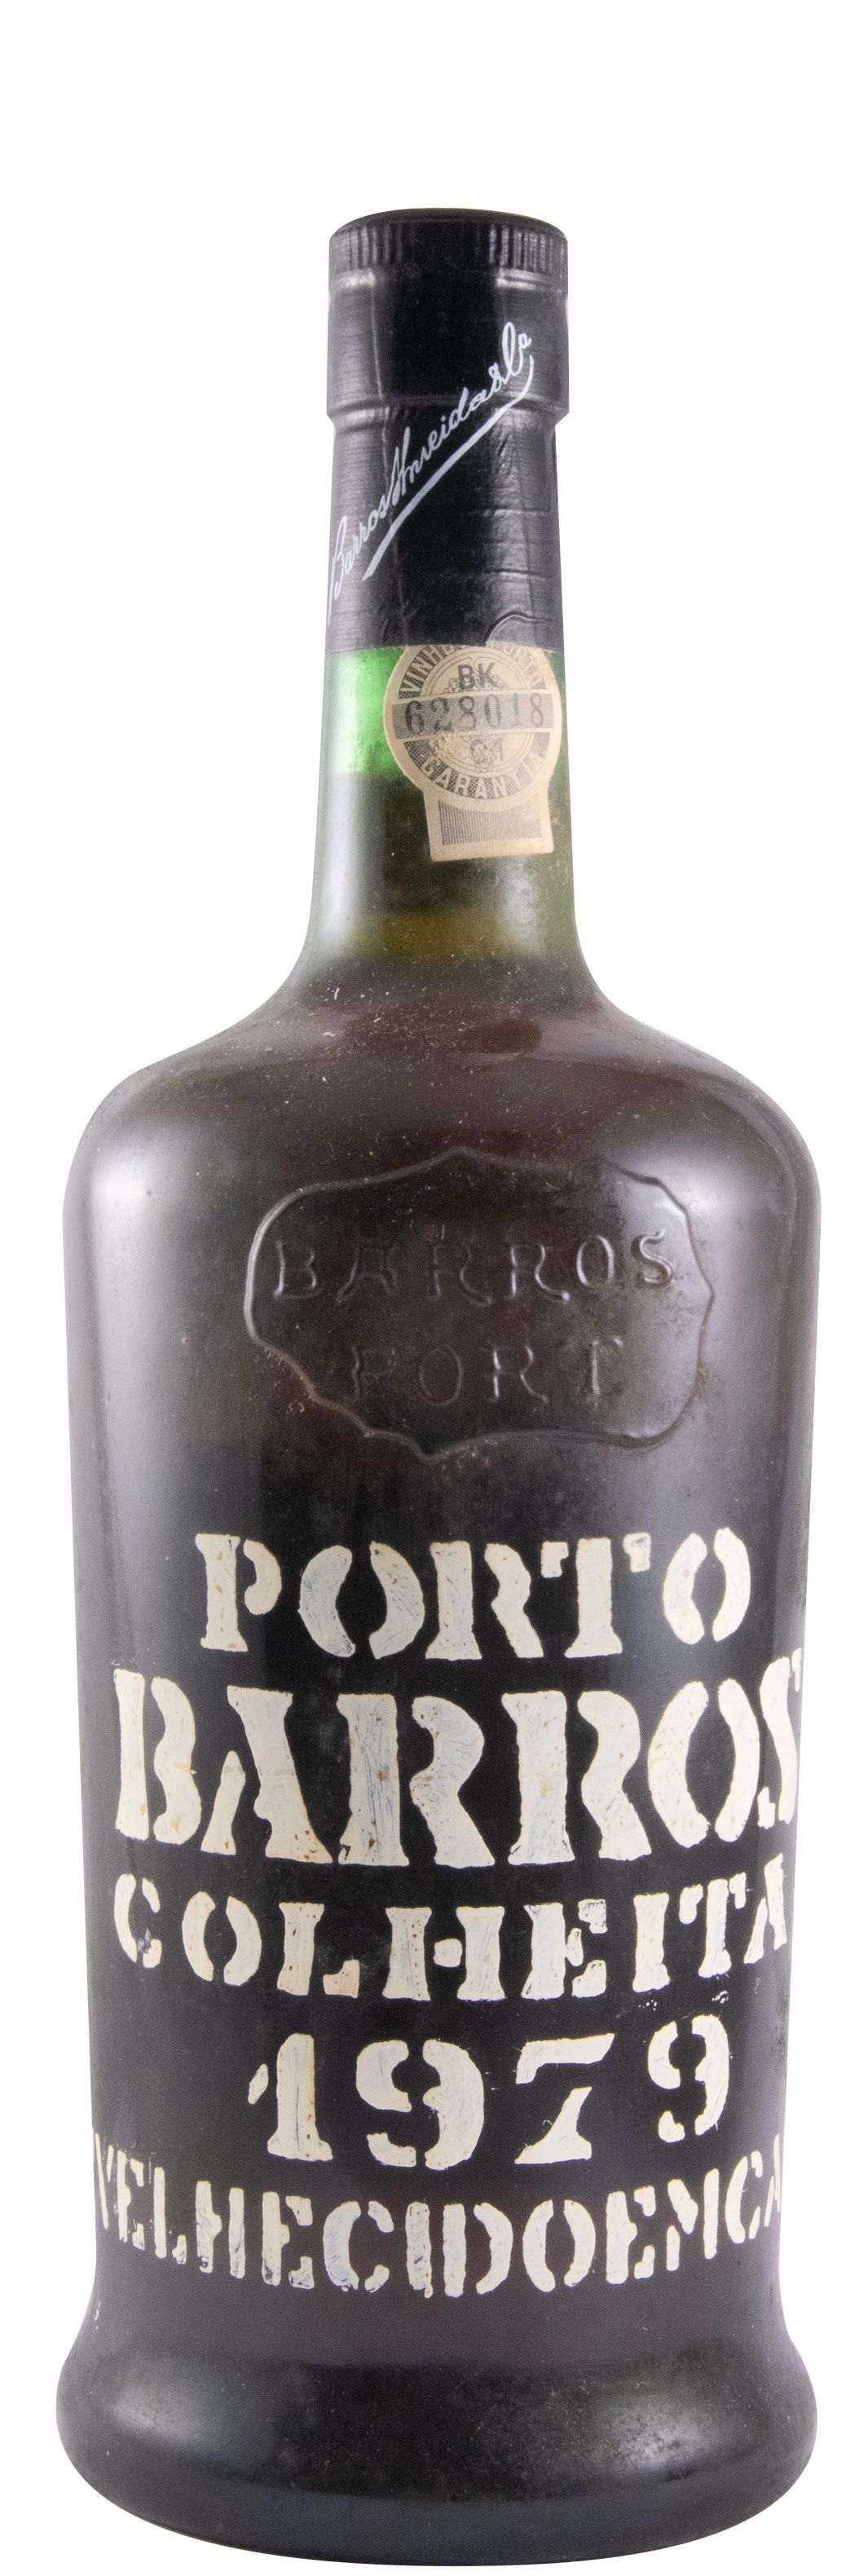 1979 Barros Colheita Porto (garrafa antiga)